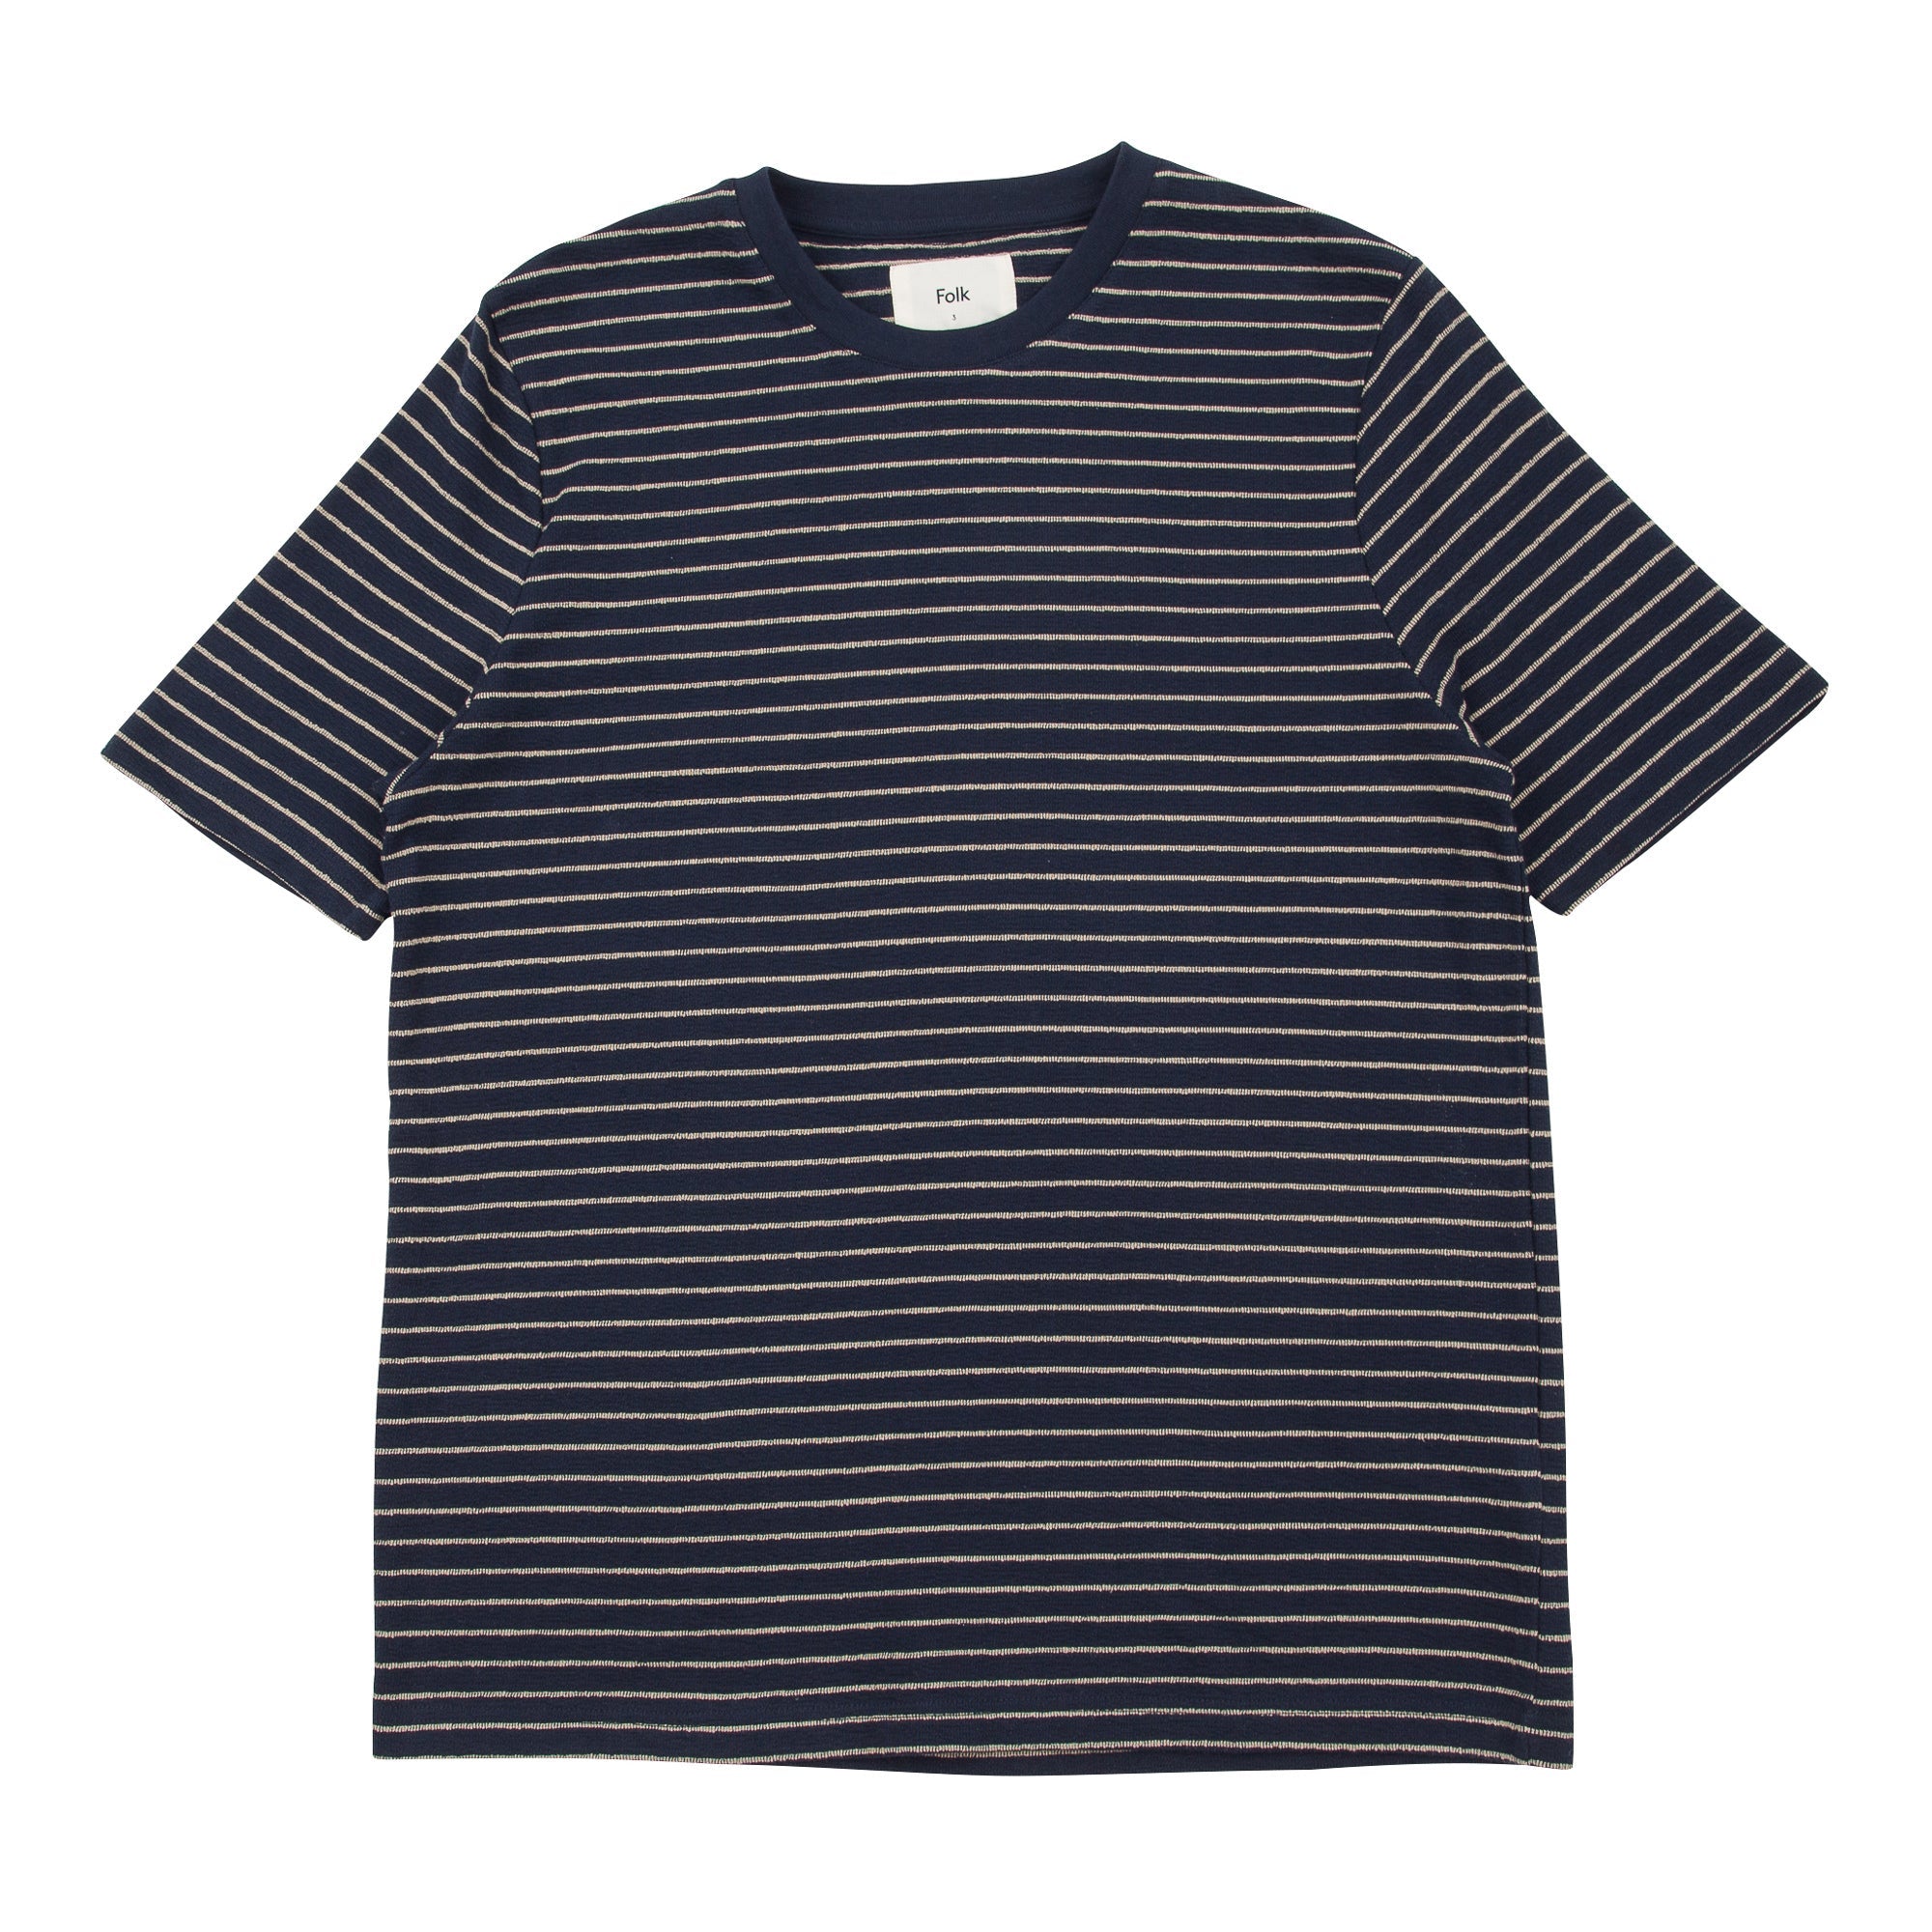 Folk Textured Stripe T-Shirt - Navy Stripe